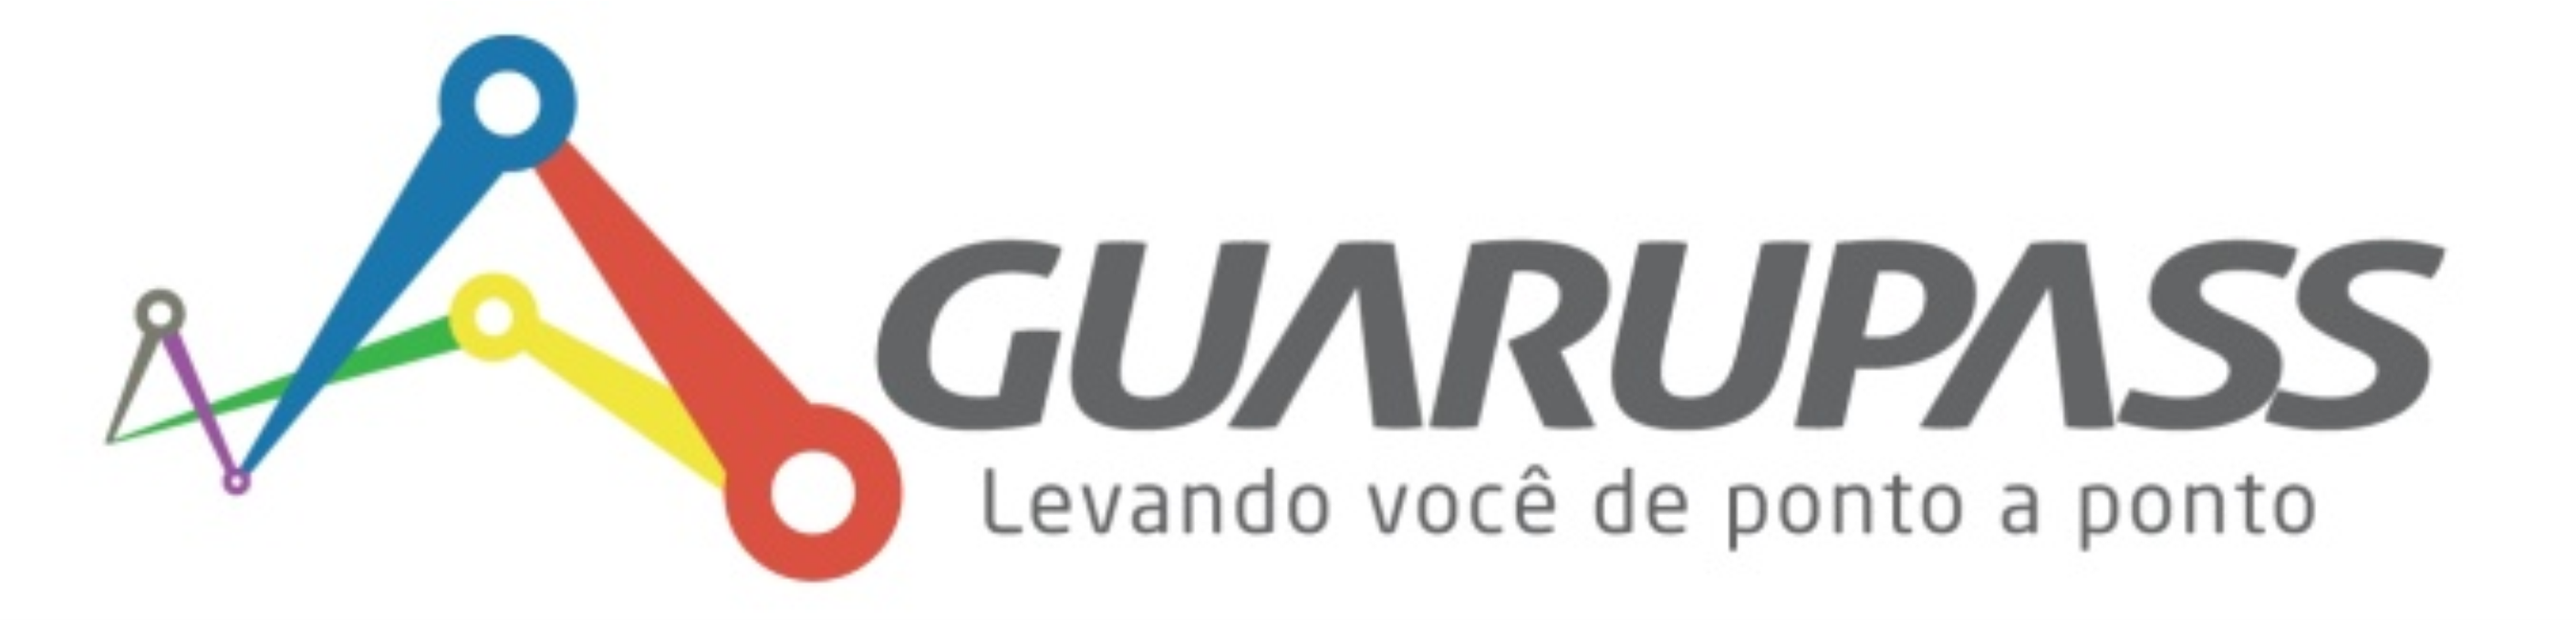 Anuncio Guarupass